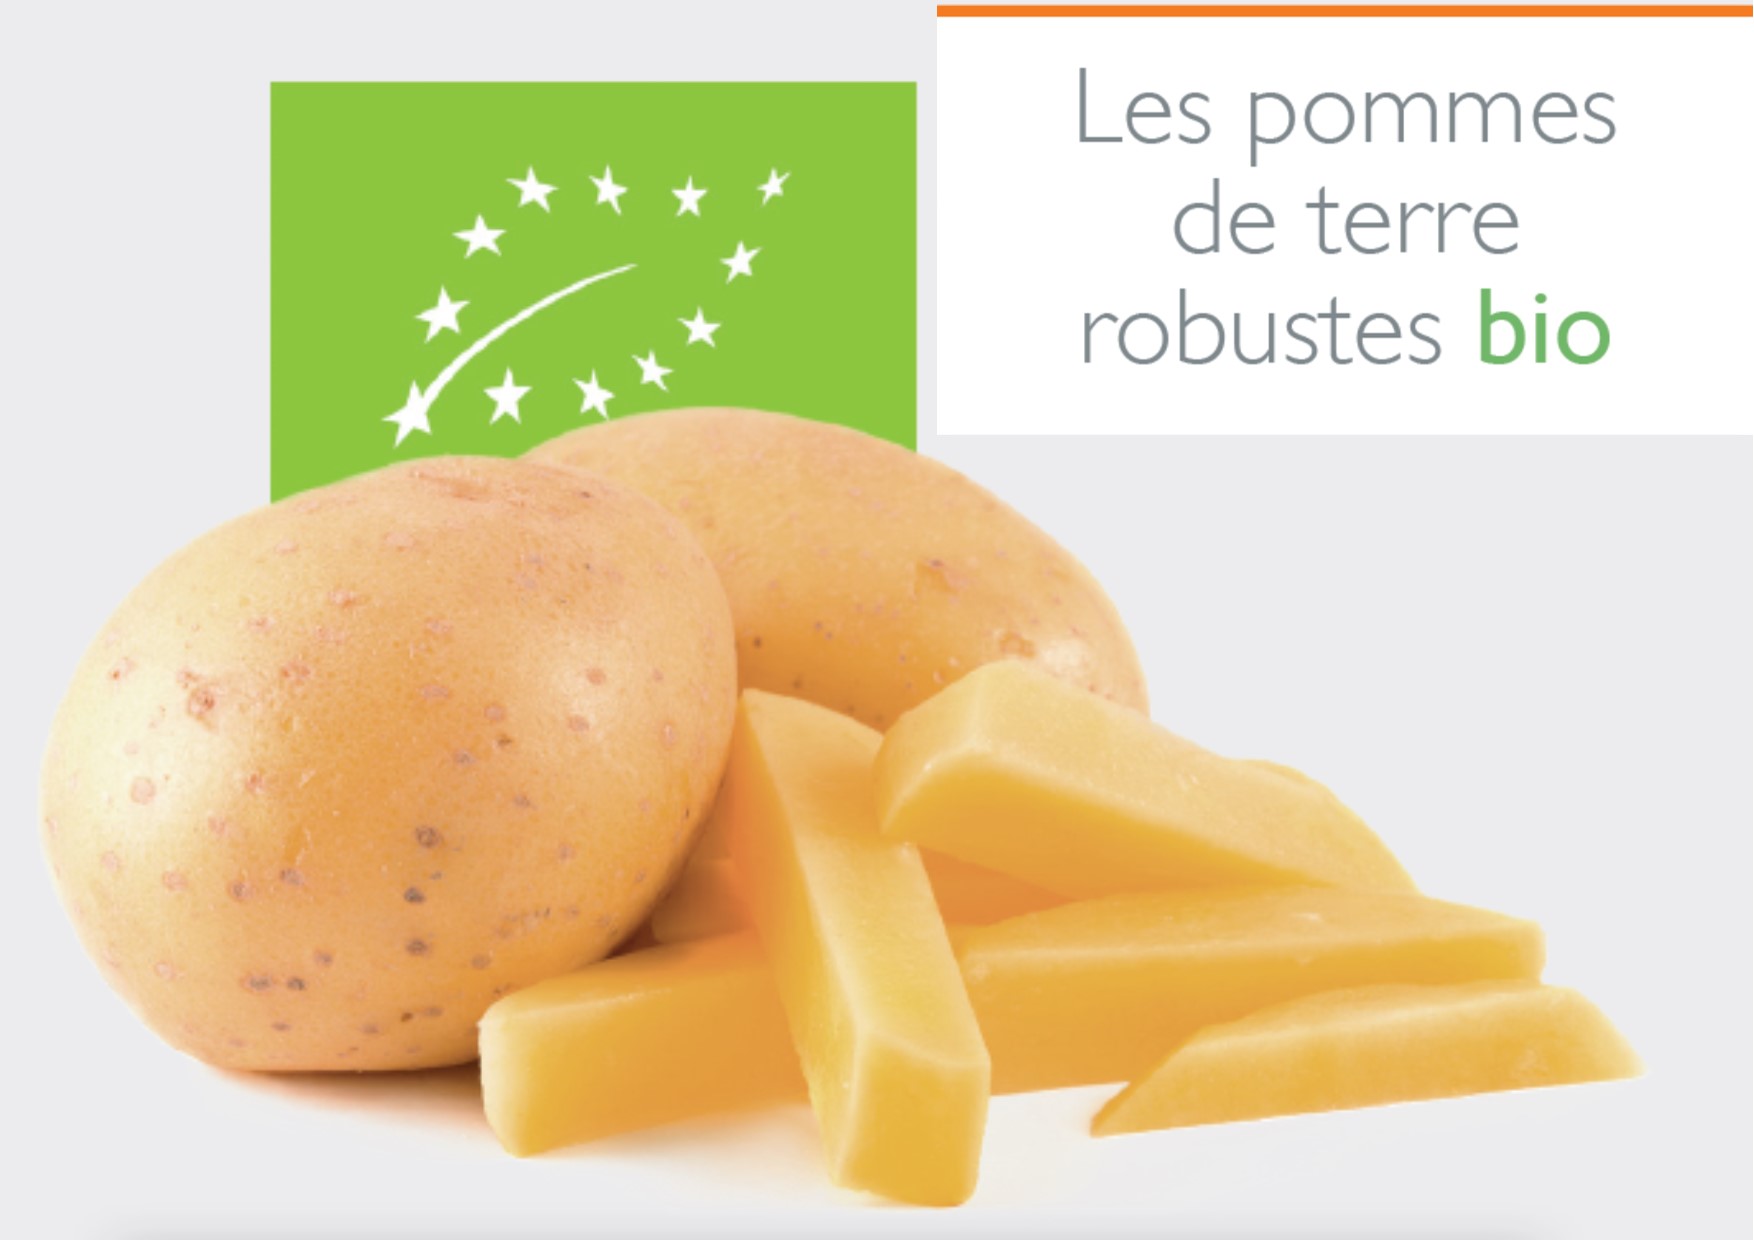 Les pommes de terre robustes bio